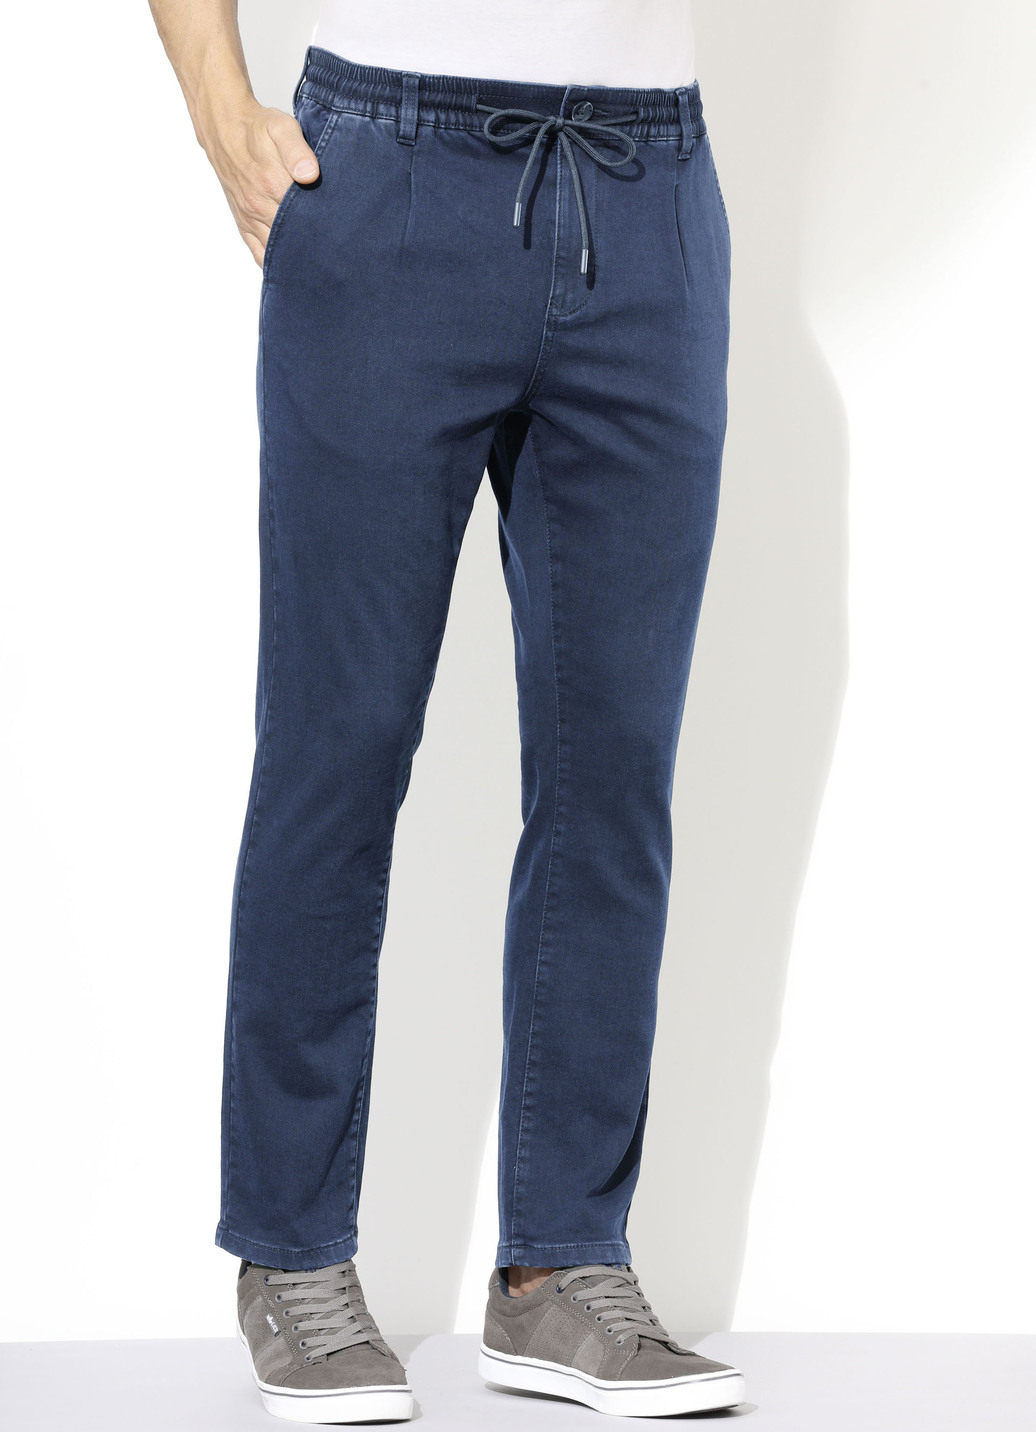 Superstretch-Jeans in 3 Farben, Jeansblau, Größe 29 von DANNECKER